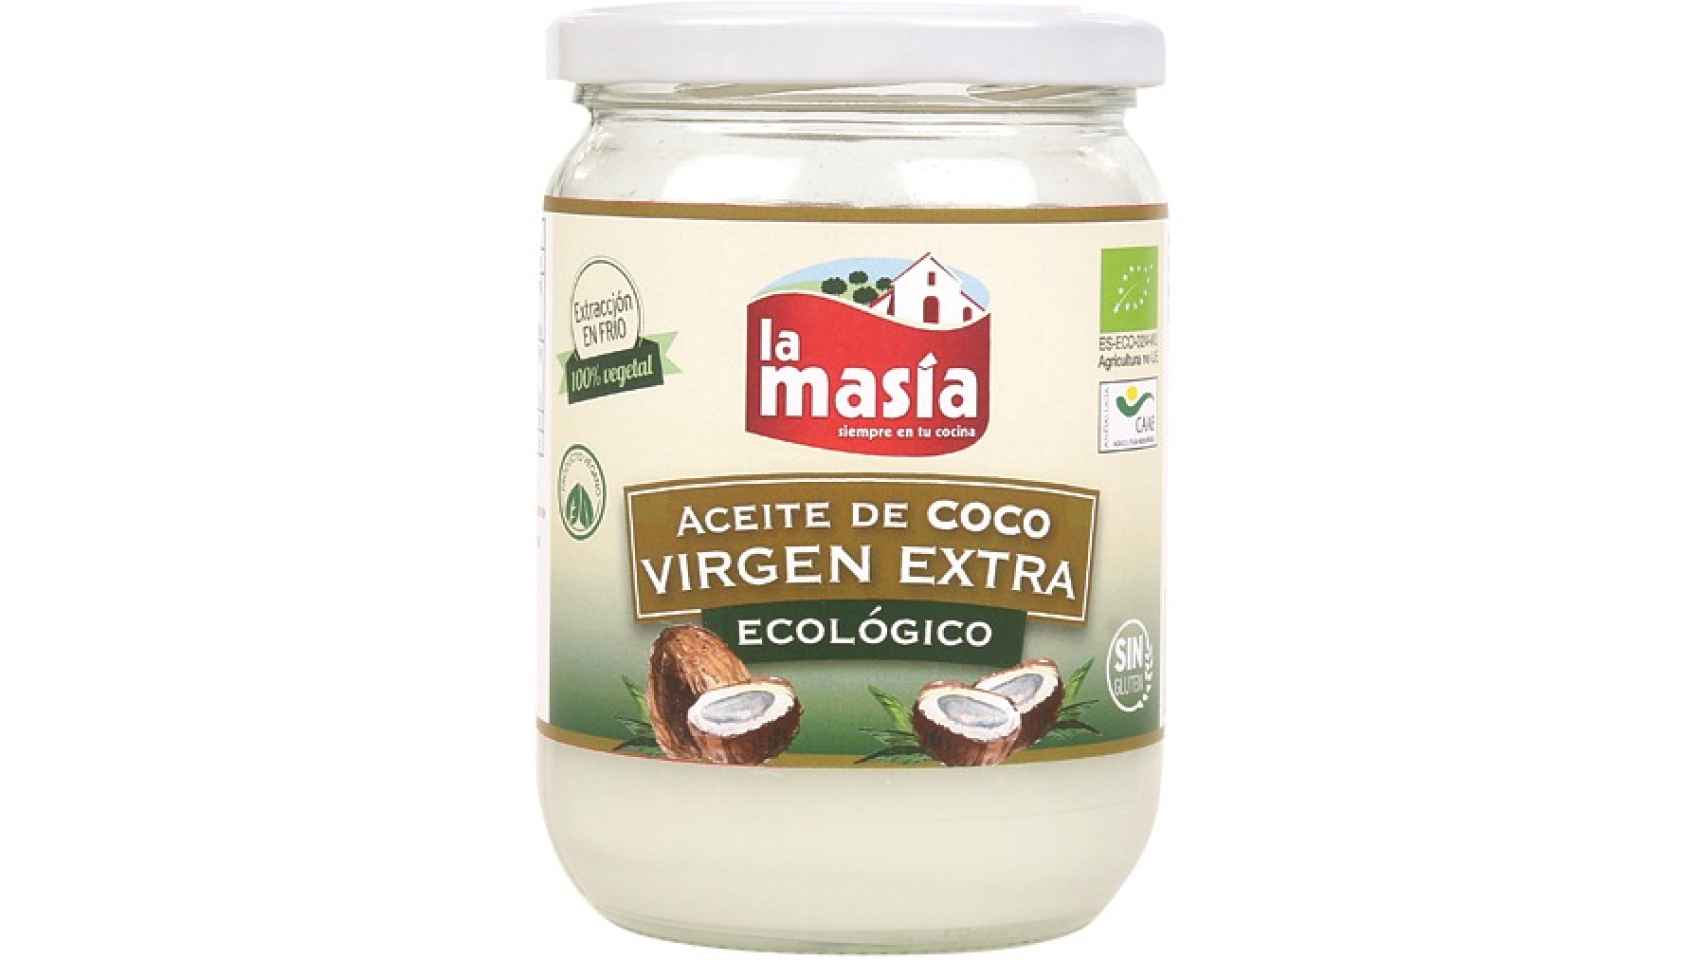 El aceite de coco de La Masía.